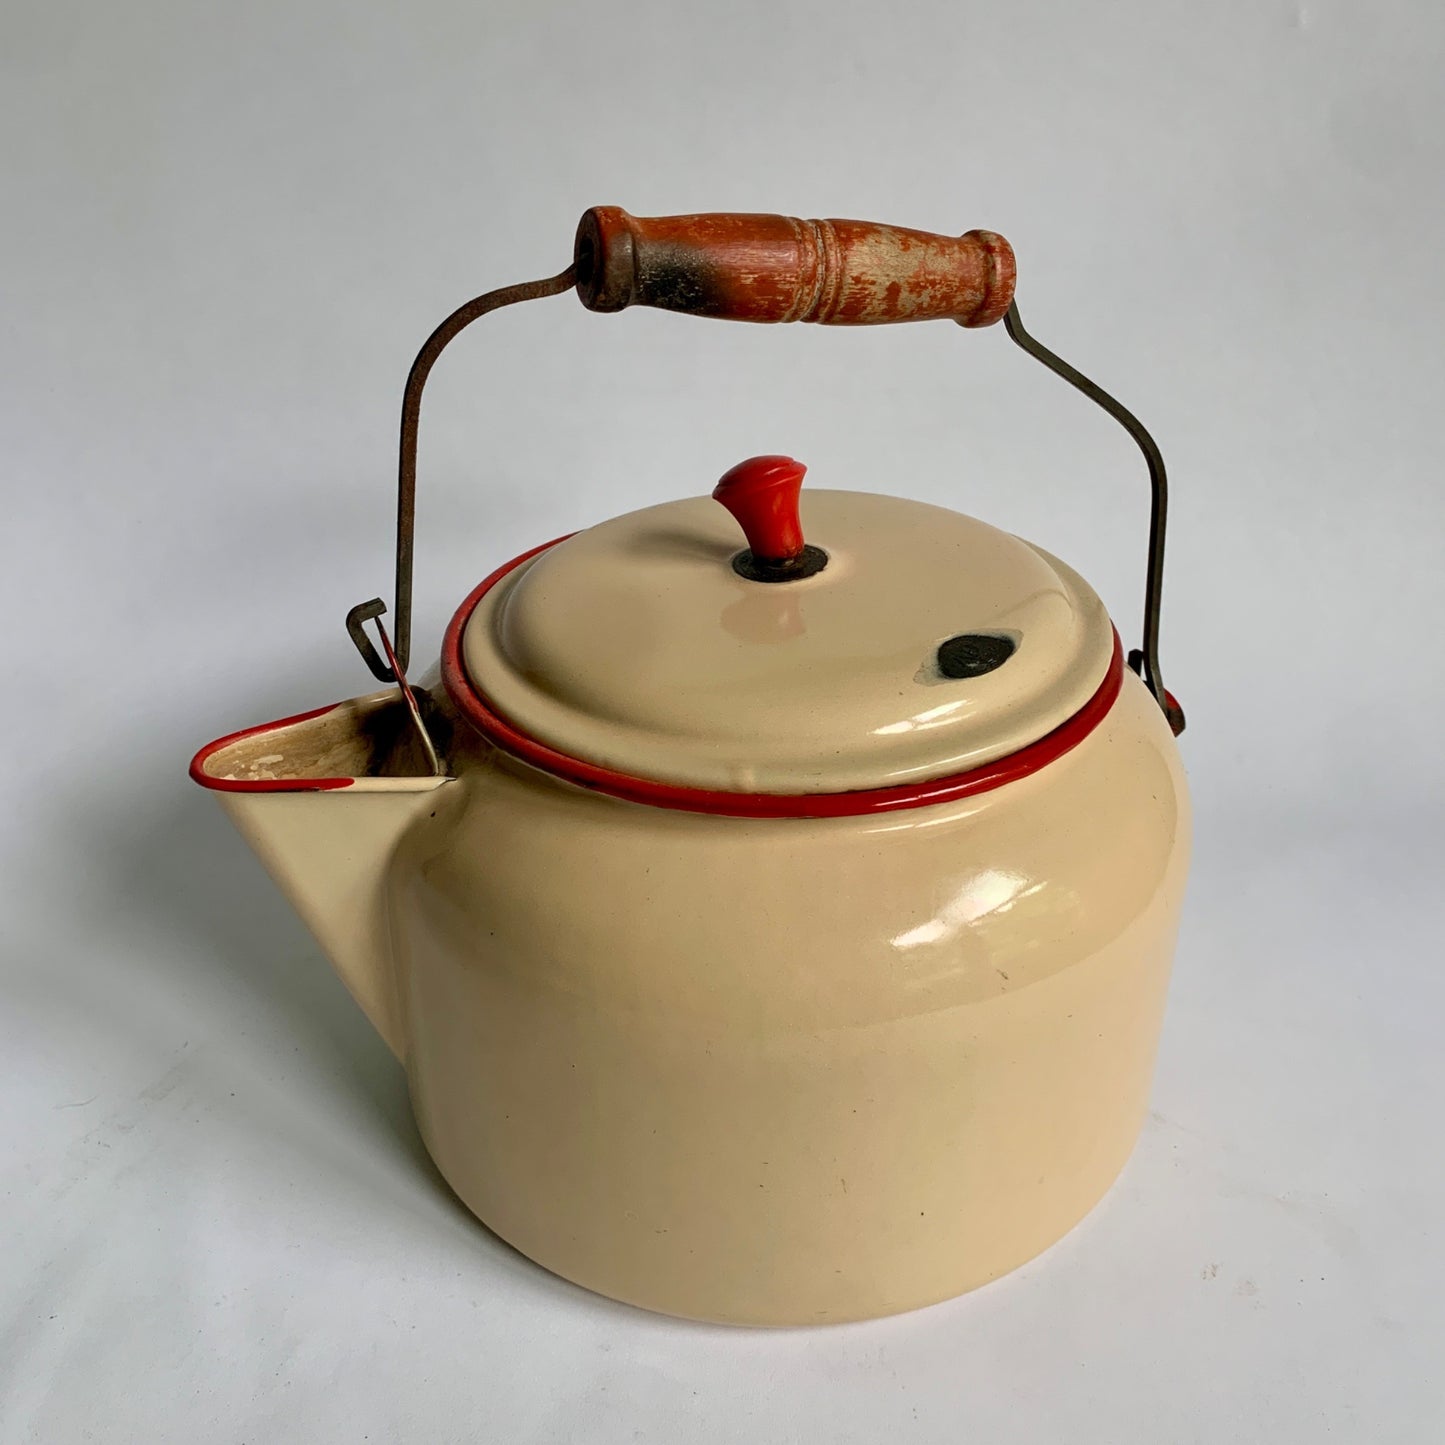 Vintage Enameled Tea Kettle Beige Red Wooden Handle Enamelware